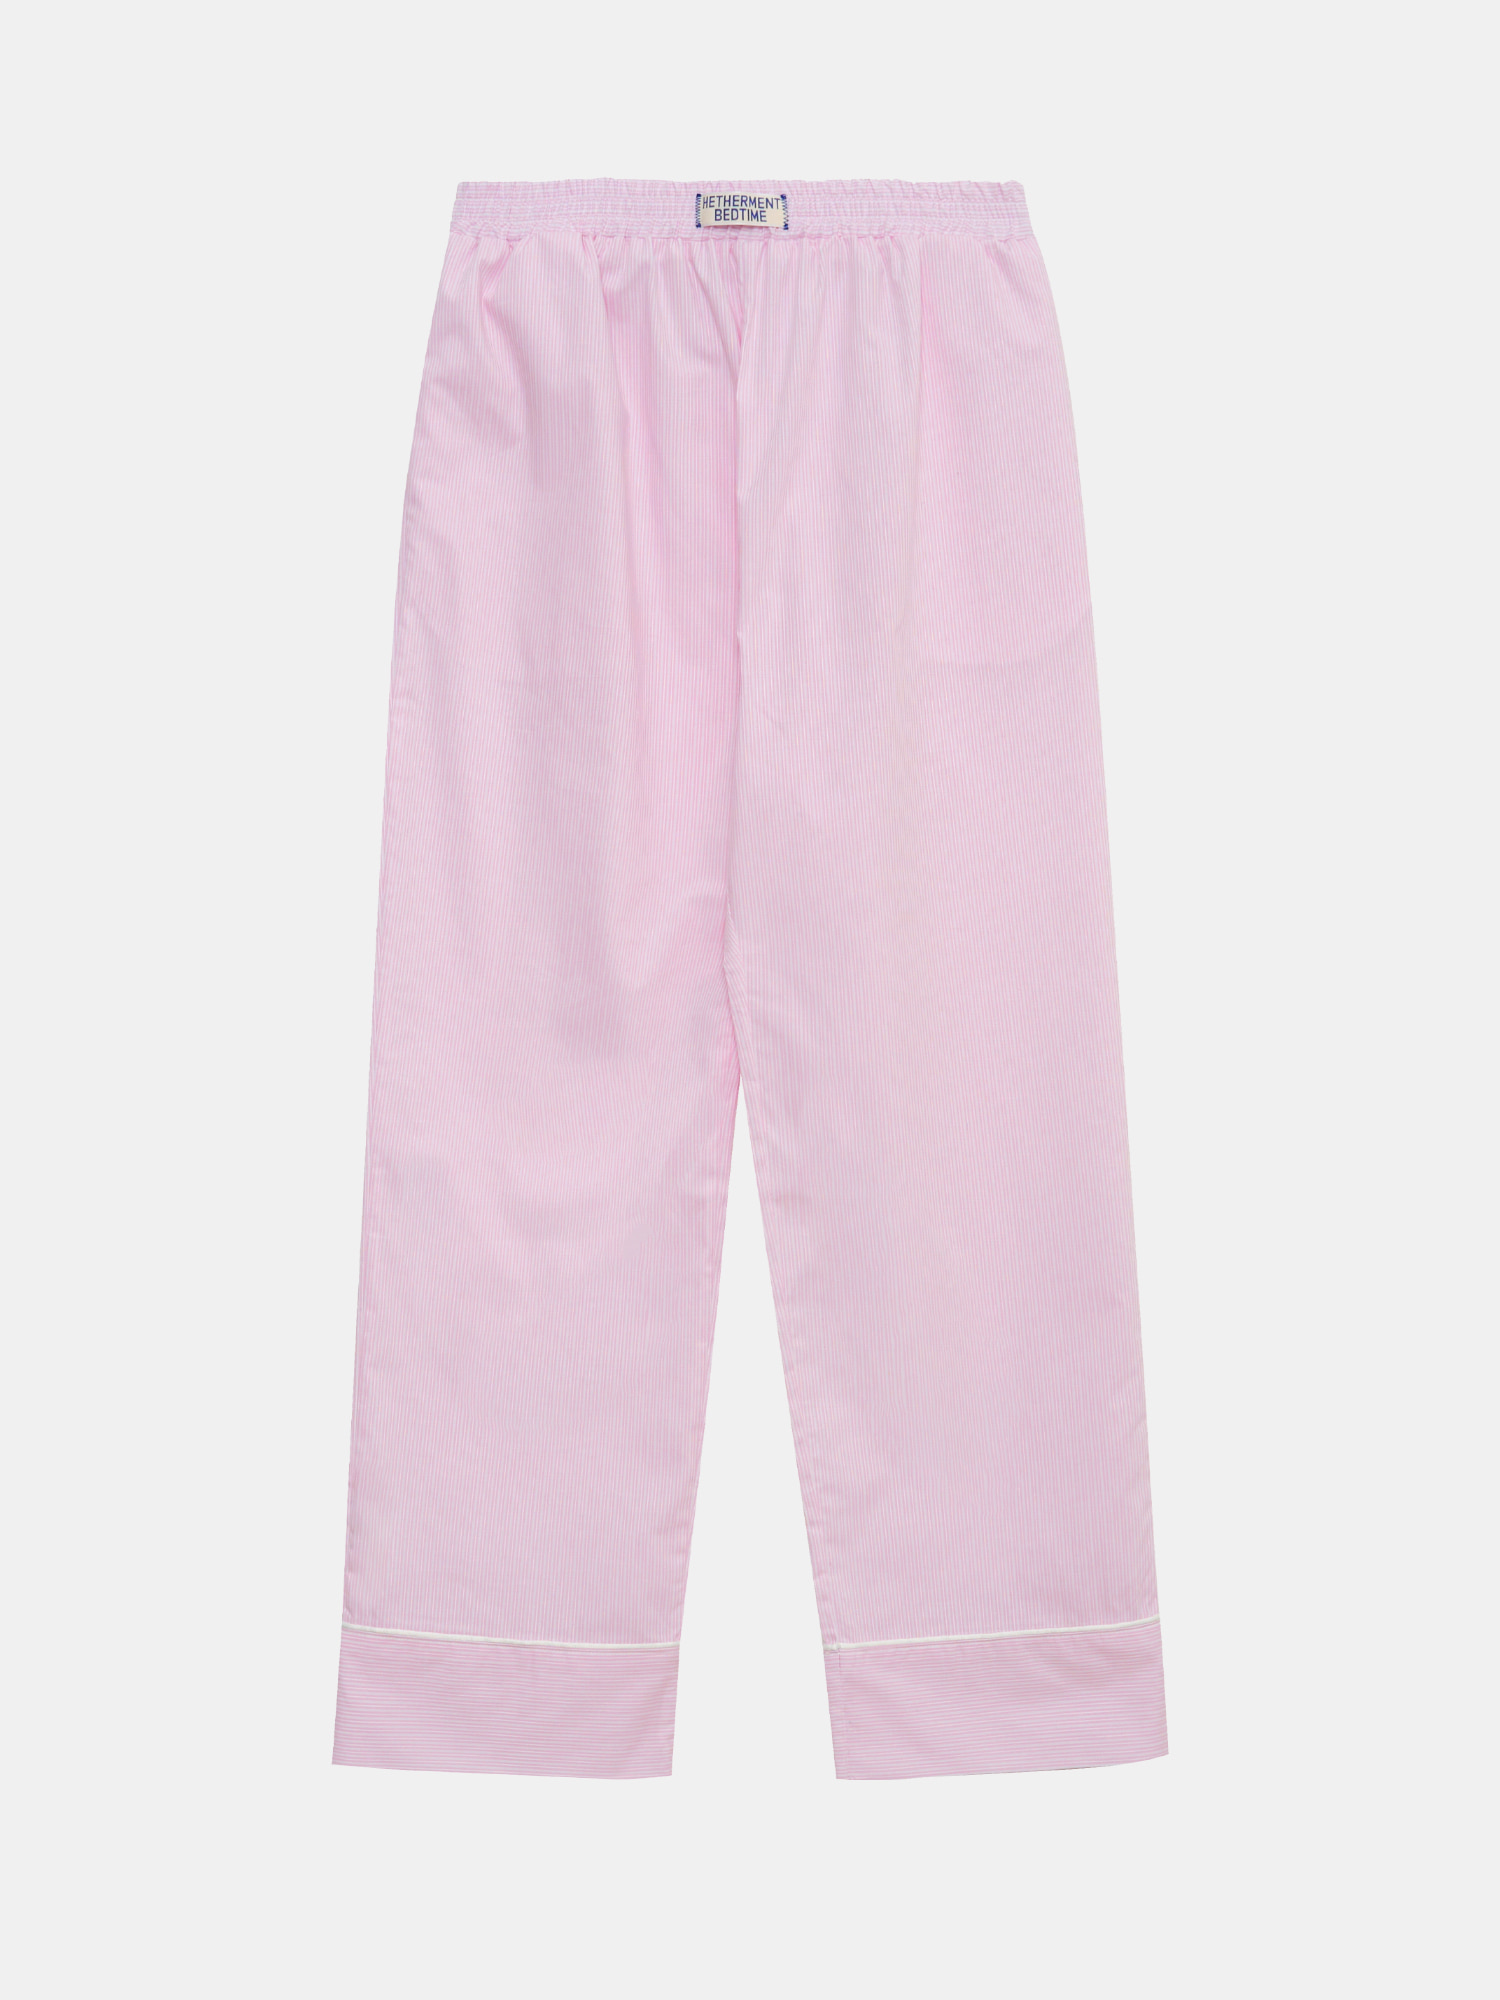 BEDTIME piping pajama pants  (pink stripe)